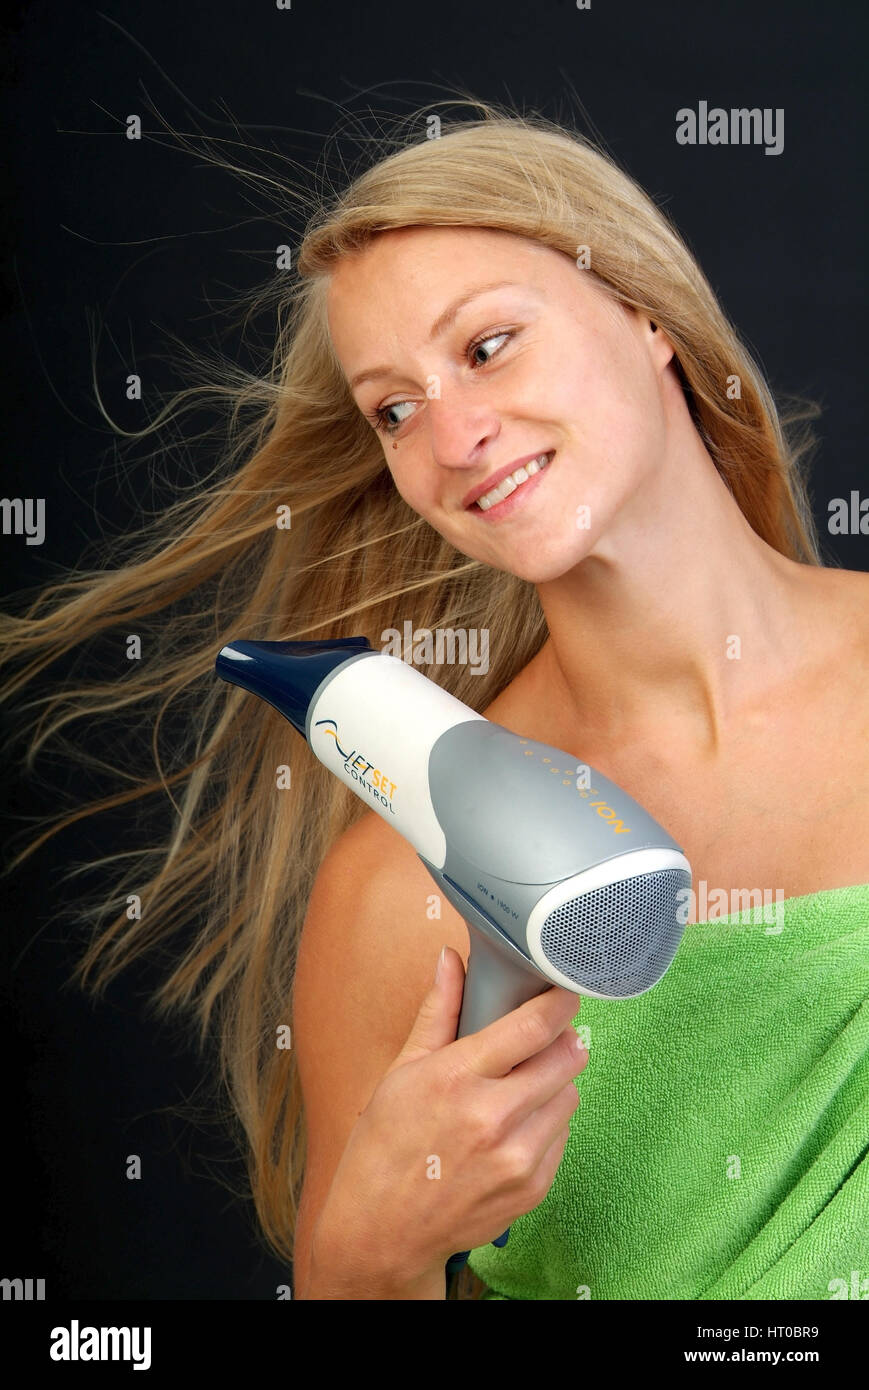 Junge, blonde Frau f?nt sich die Haare - woman with hair dryer Stock Photo